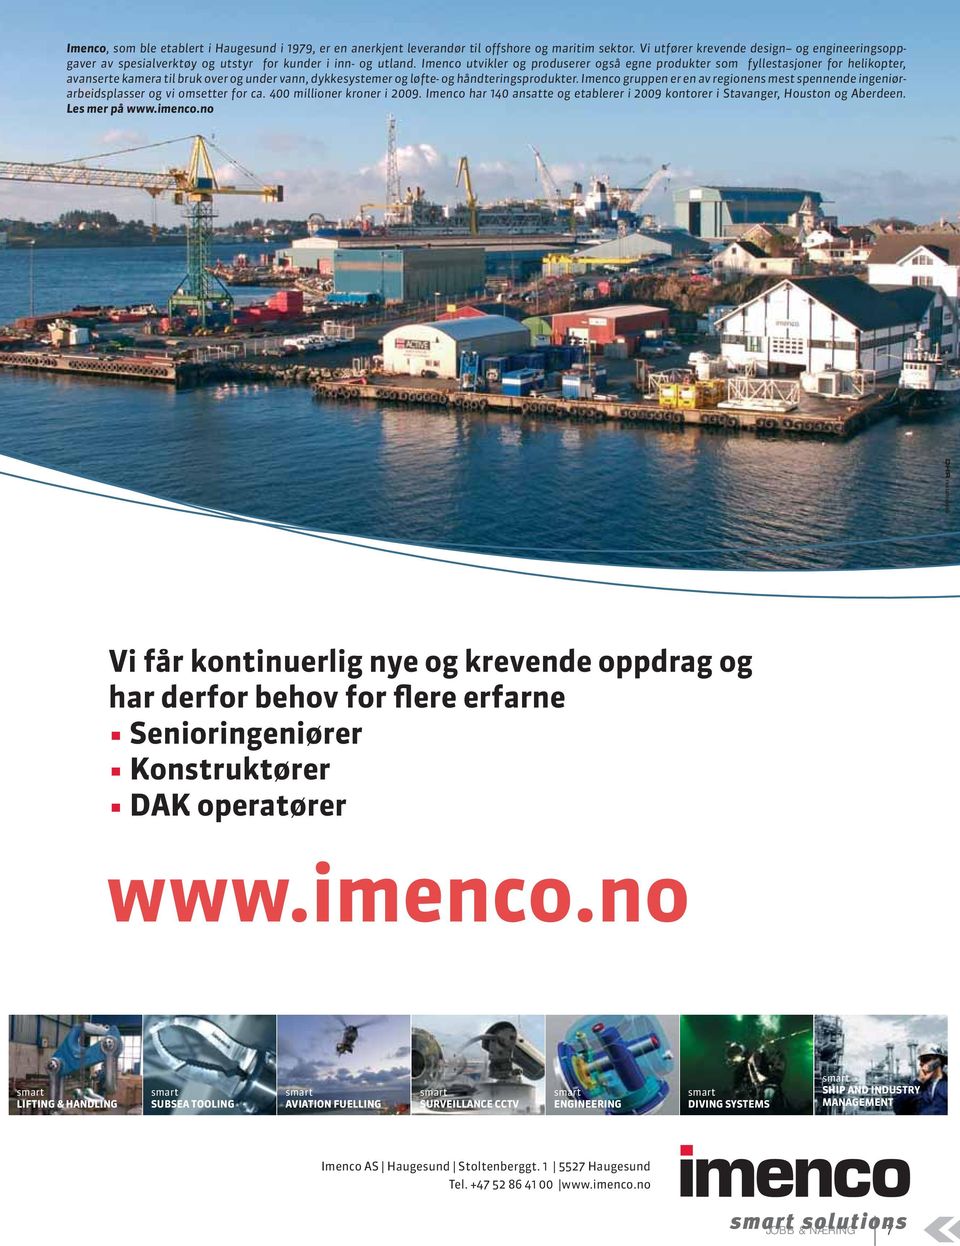 Imenco utvikler og produserer også egne produkter som fyllestasjoner for helikopter, avanserte kamera til bruk over og under vann, dykkesystemer og løfte- og håndteringsprodukter.